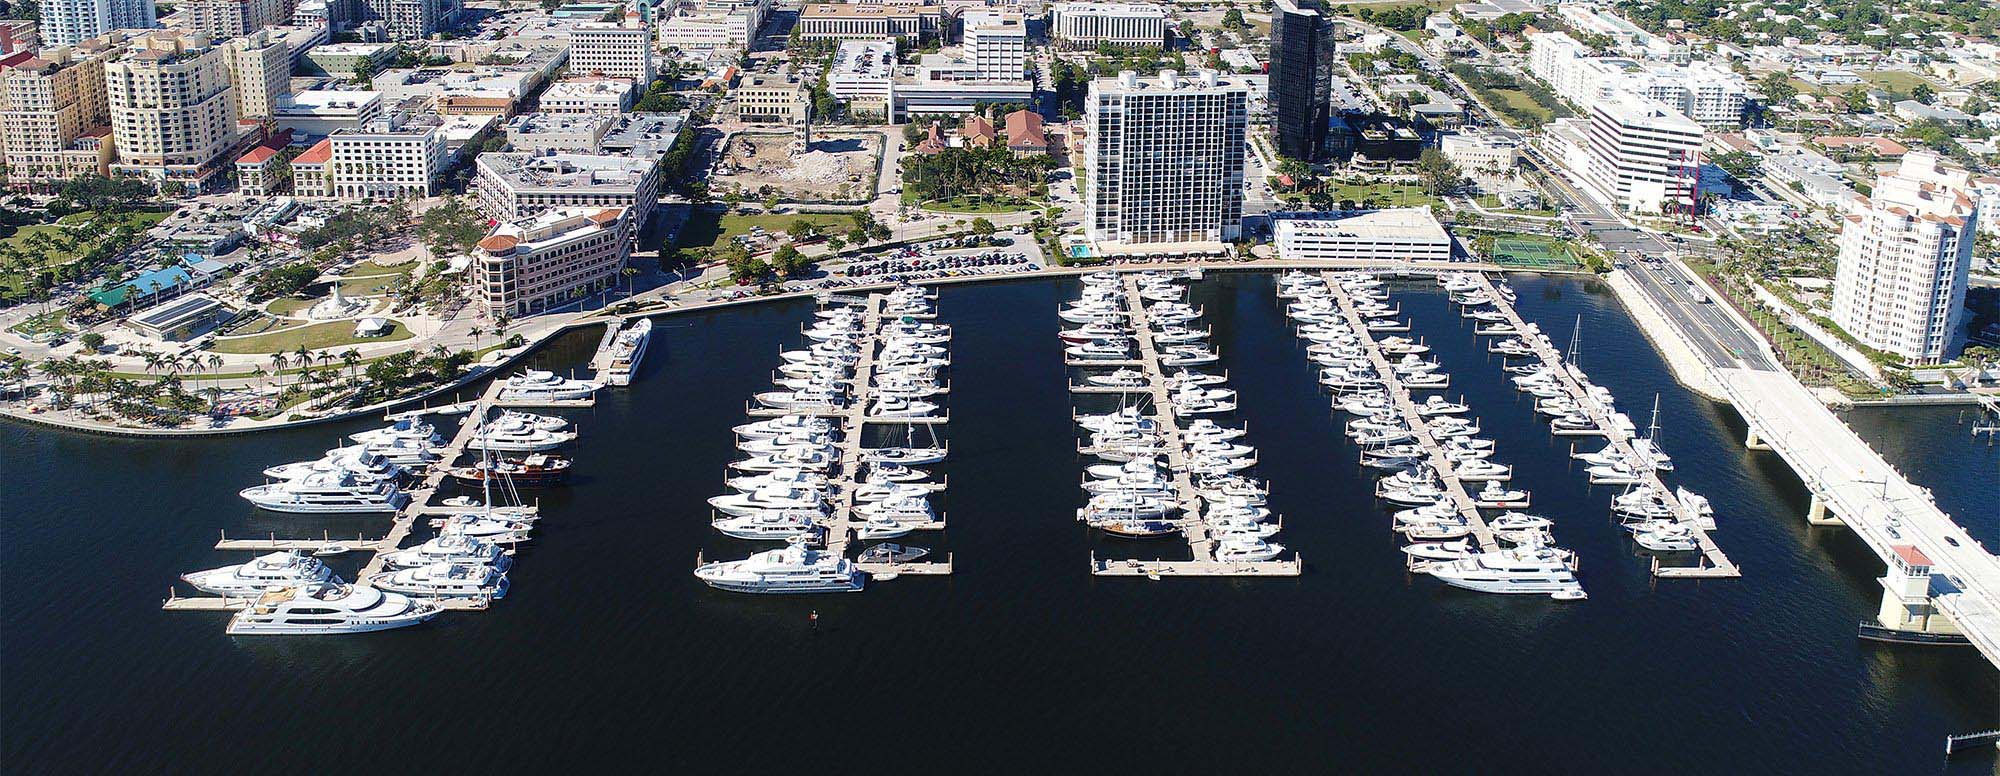 Palm Harbor Docks and Marina